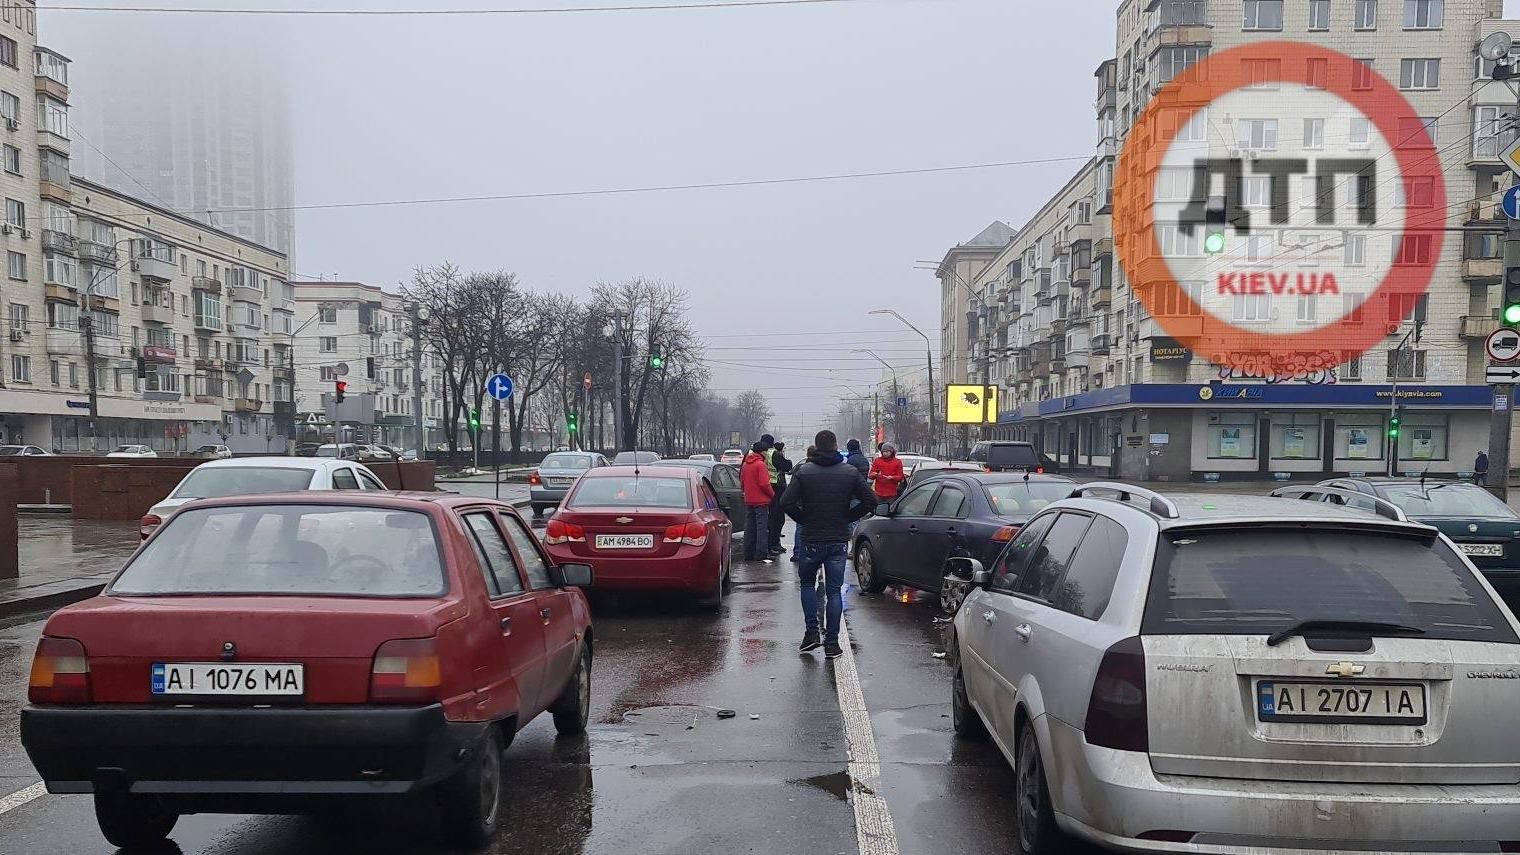 Масштабна ДТП за участю 7 авто сталася в Києві: винуватець потім ще хотів побити журналіста – відео, фото